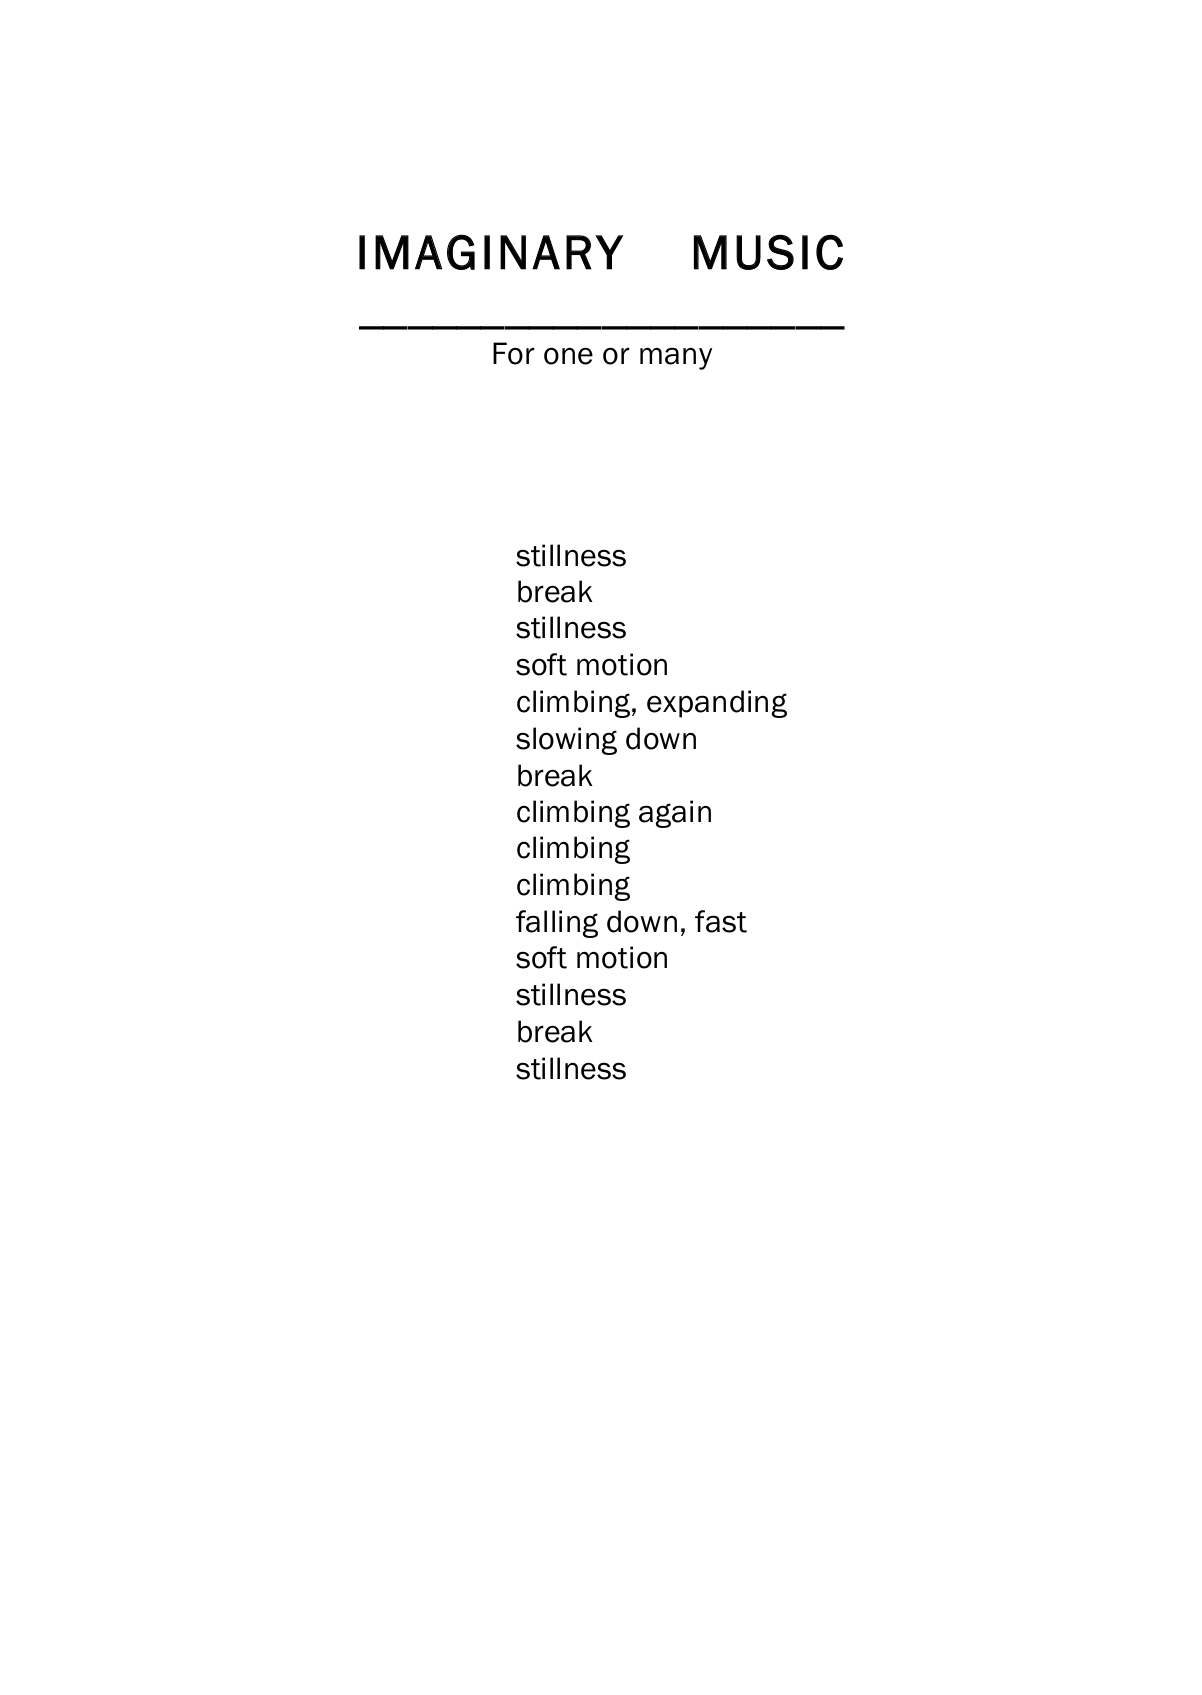 Imaginary music